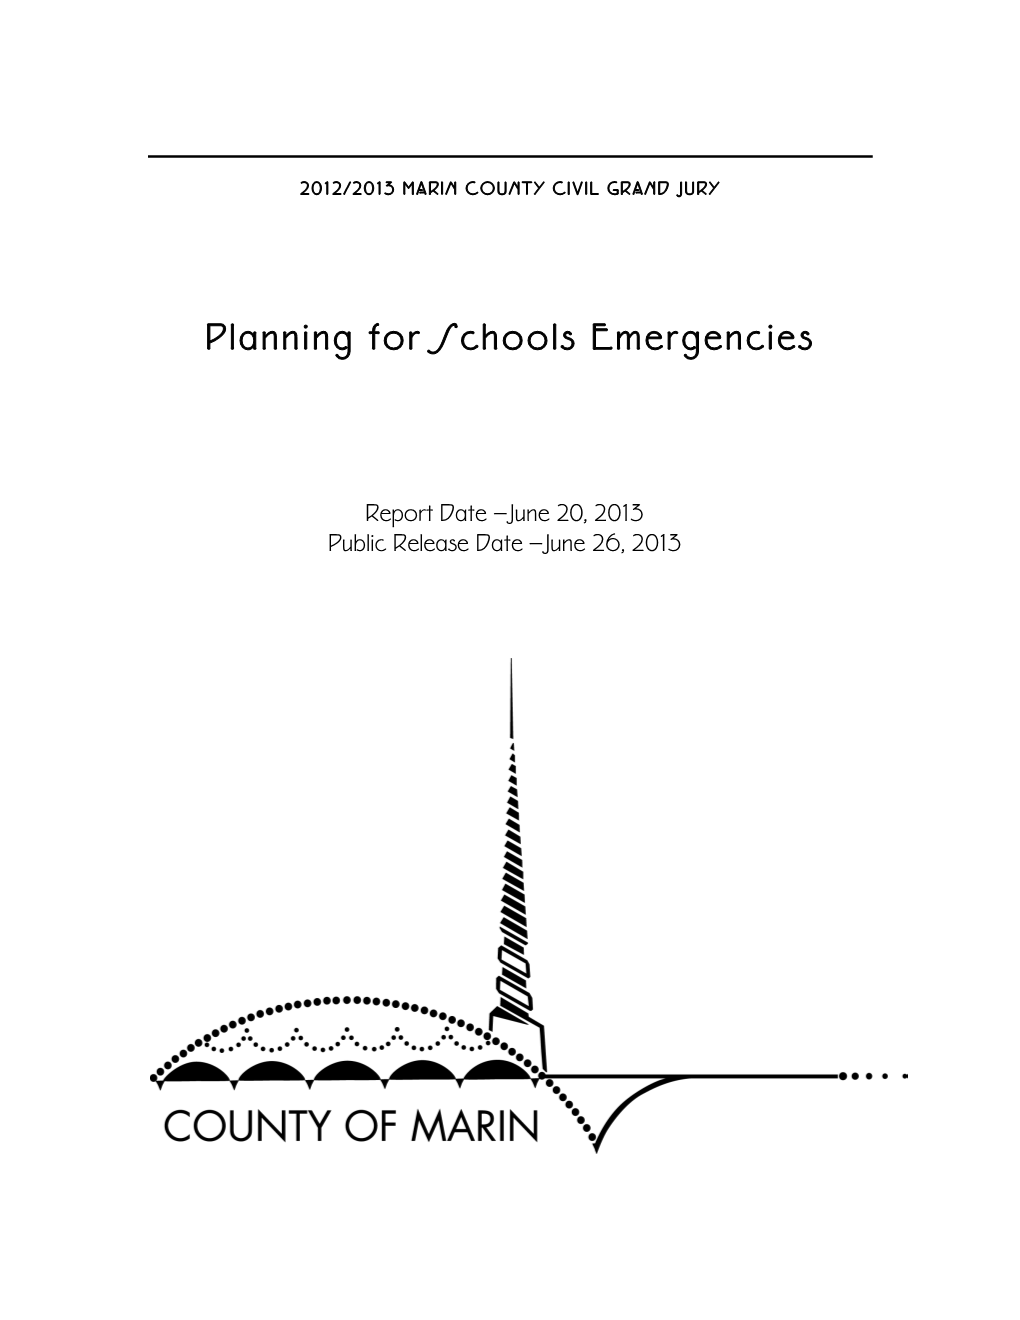 Planning for Schools Emergencies